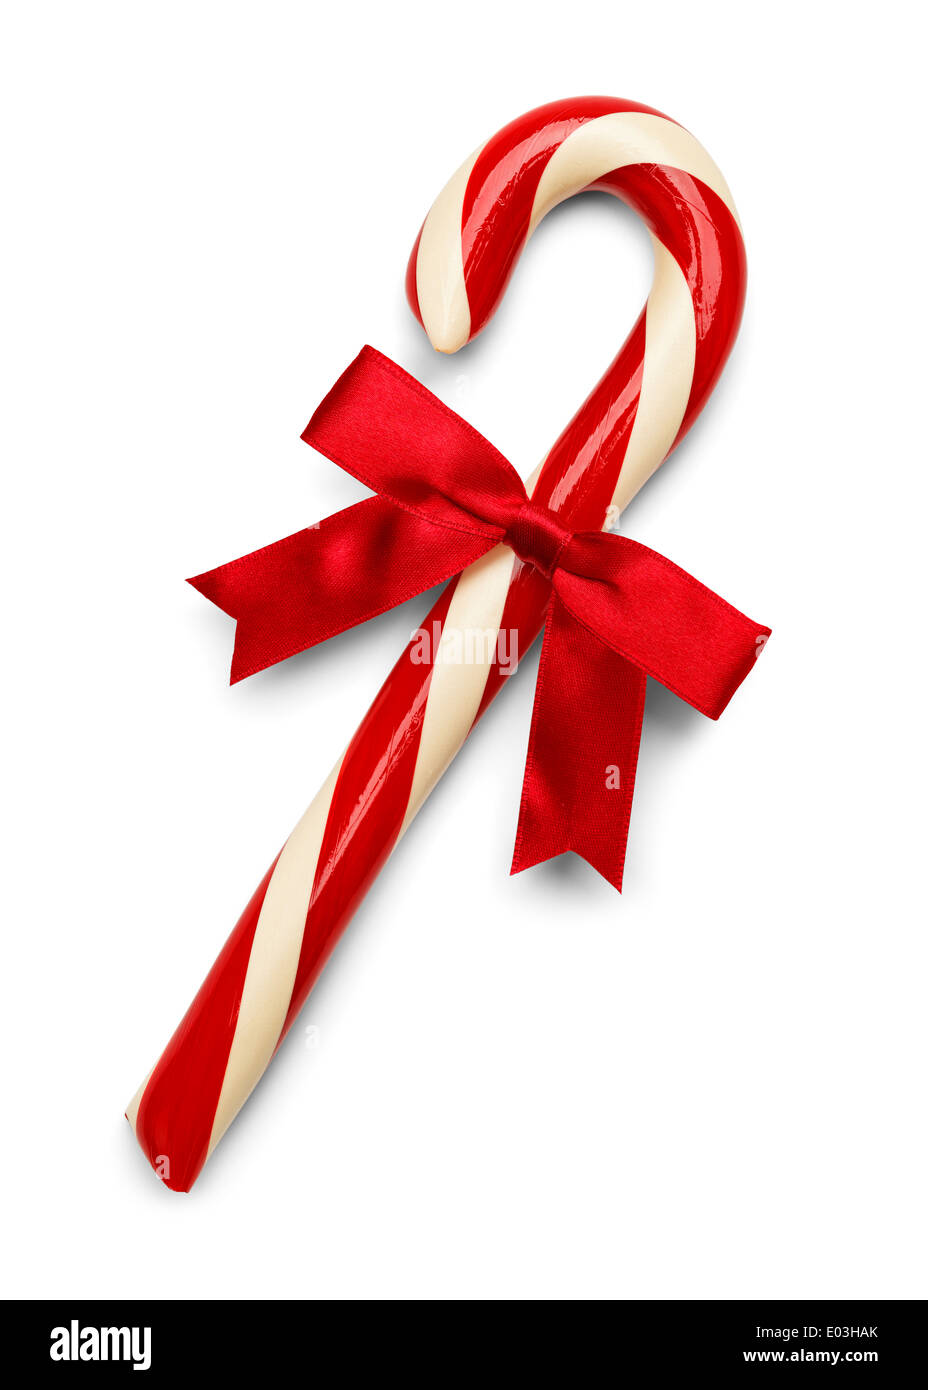 Natale Candy Cane con fiocco rosso isolato su sfondo bianco. Foto Stock